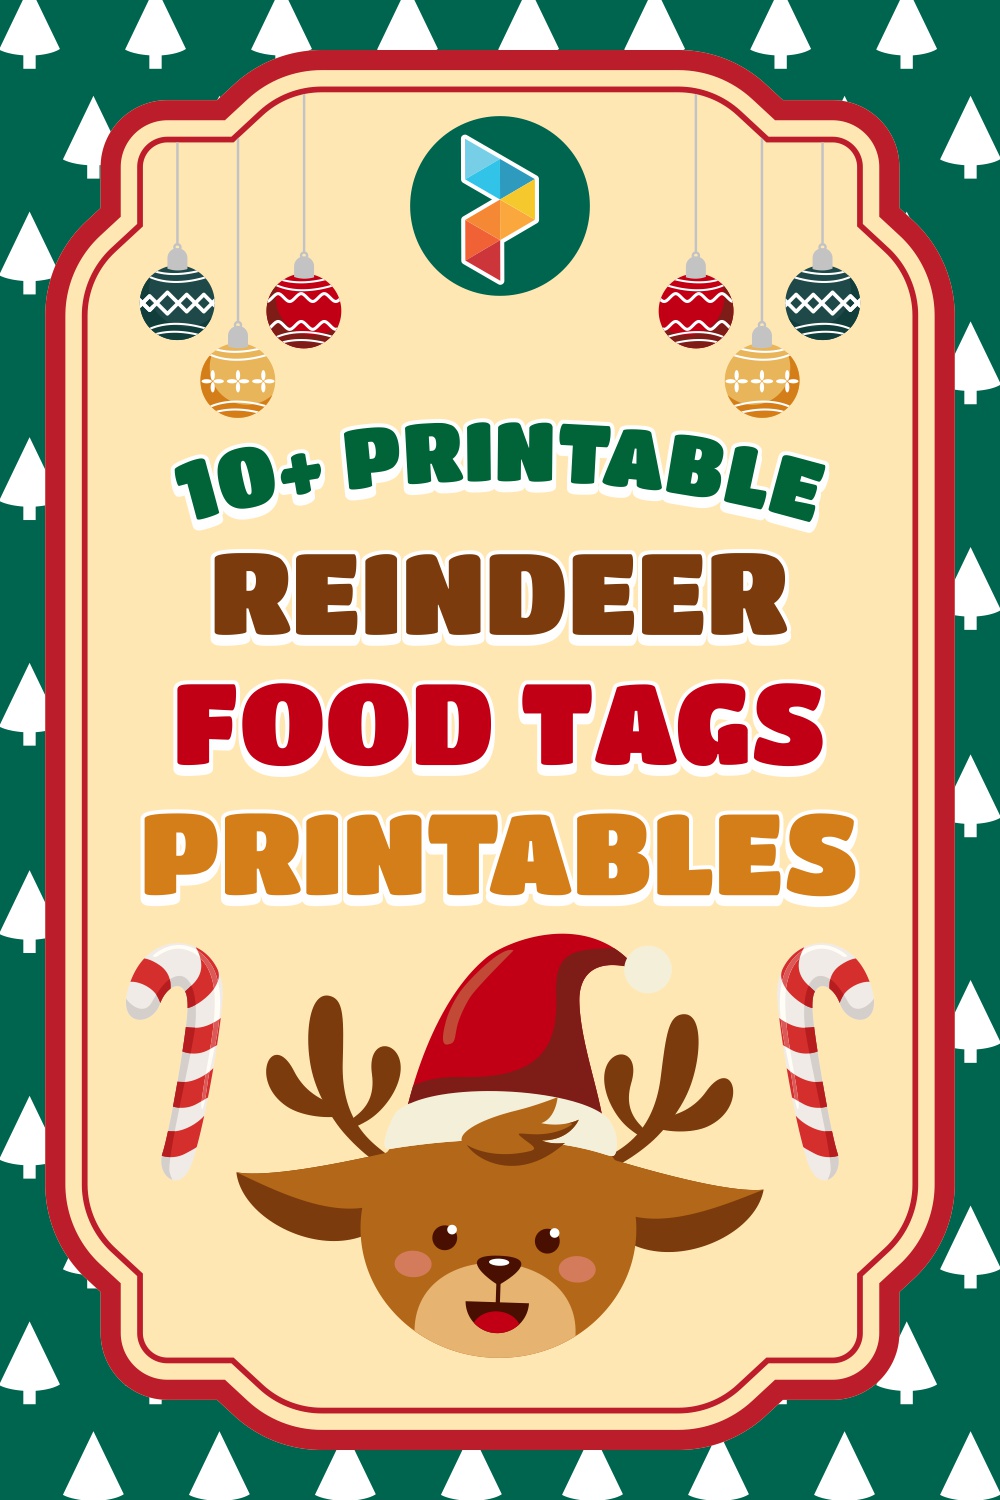 Reindeer Food Tags